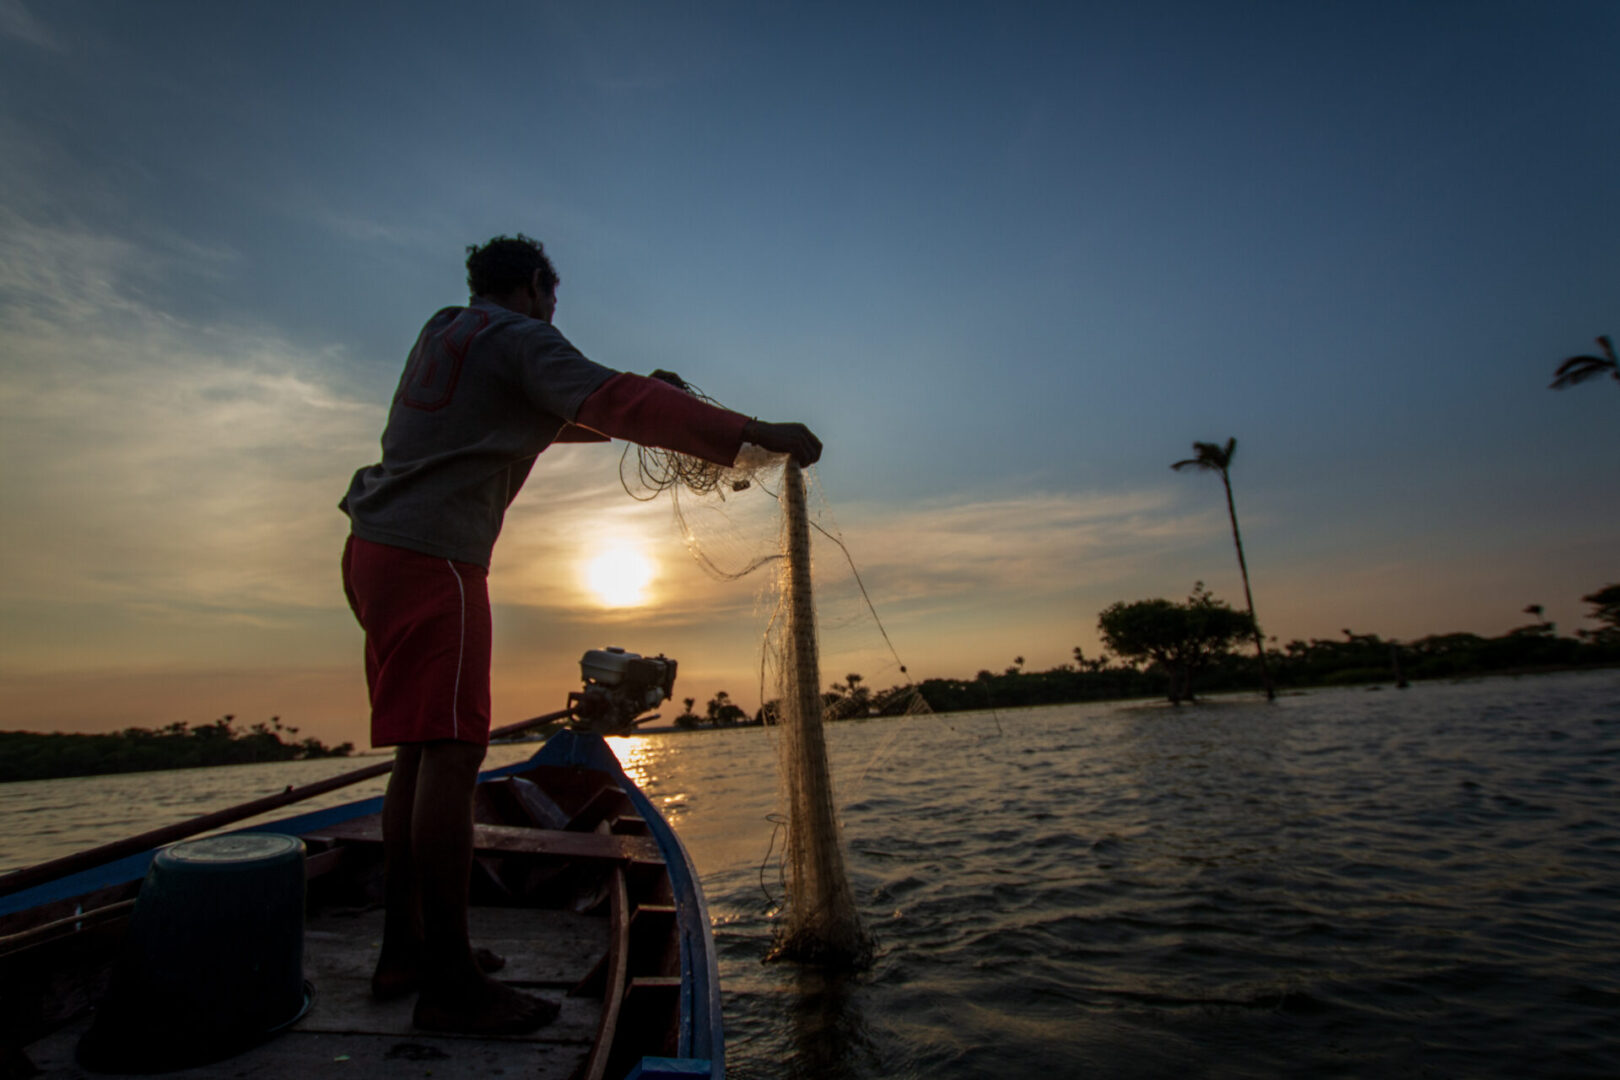 Pescador de comunidade local no rio Tapajós